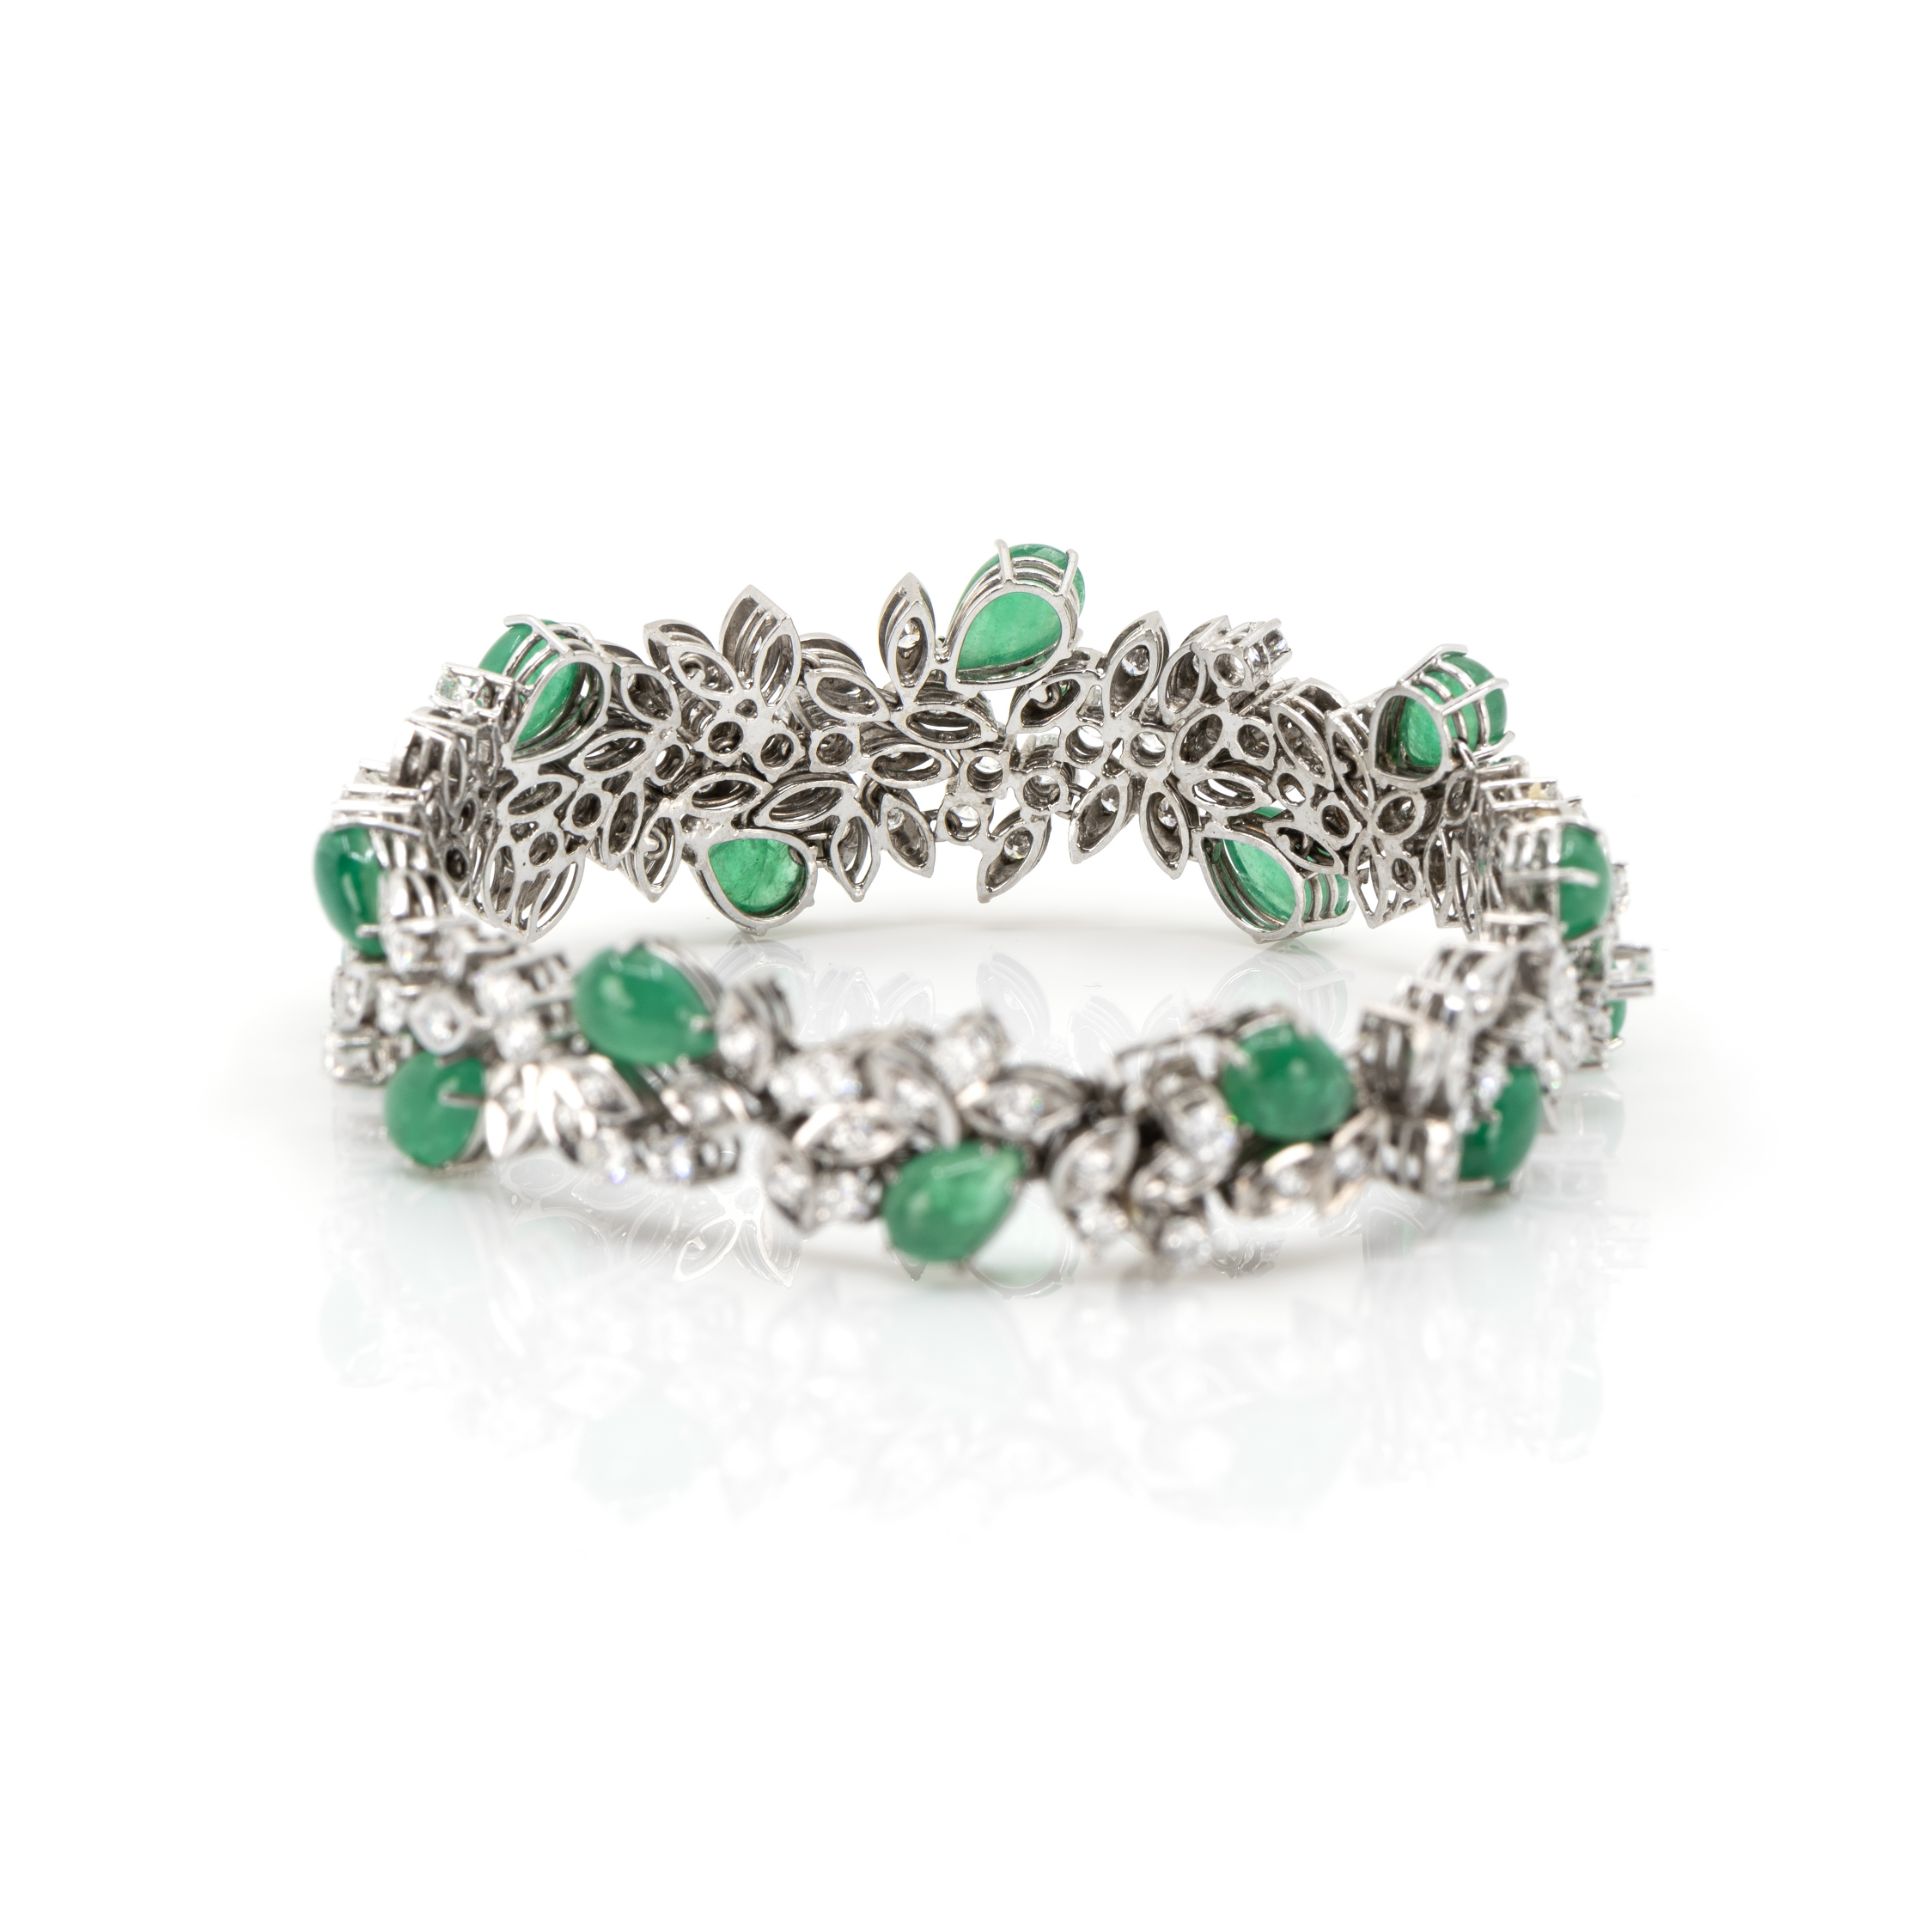 Collier und Armband mit Smaragd-Diamantbesatz - Image 7 of 8